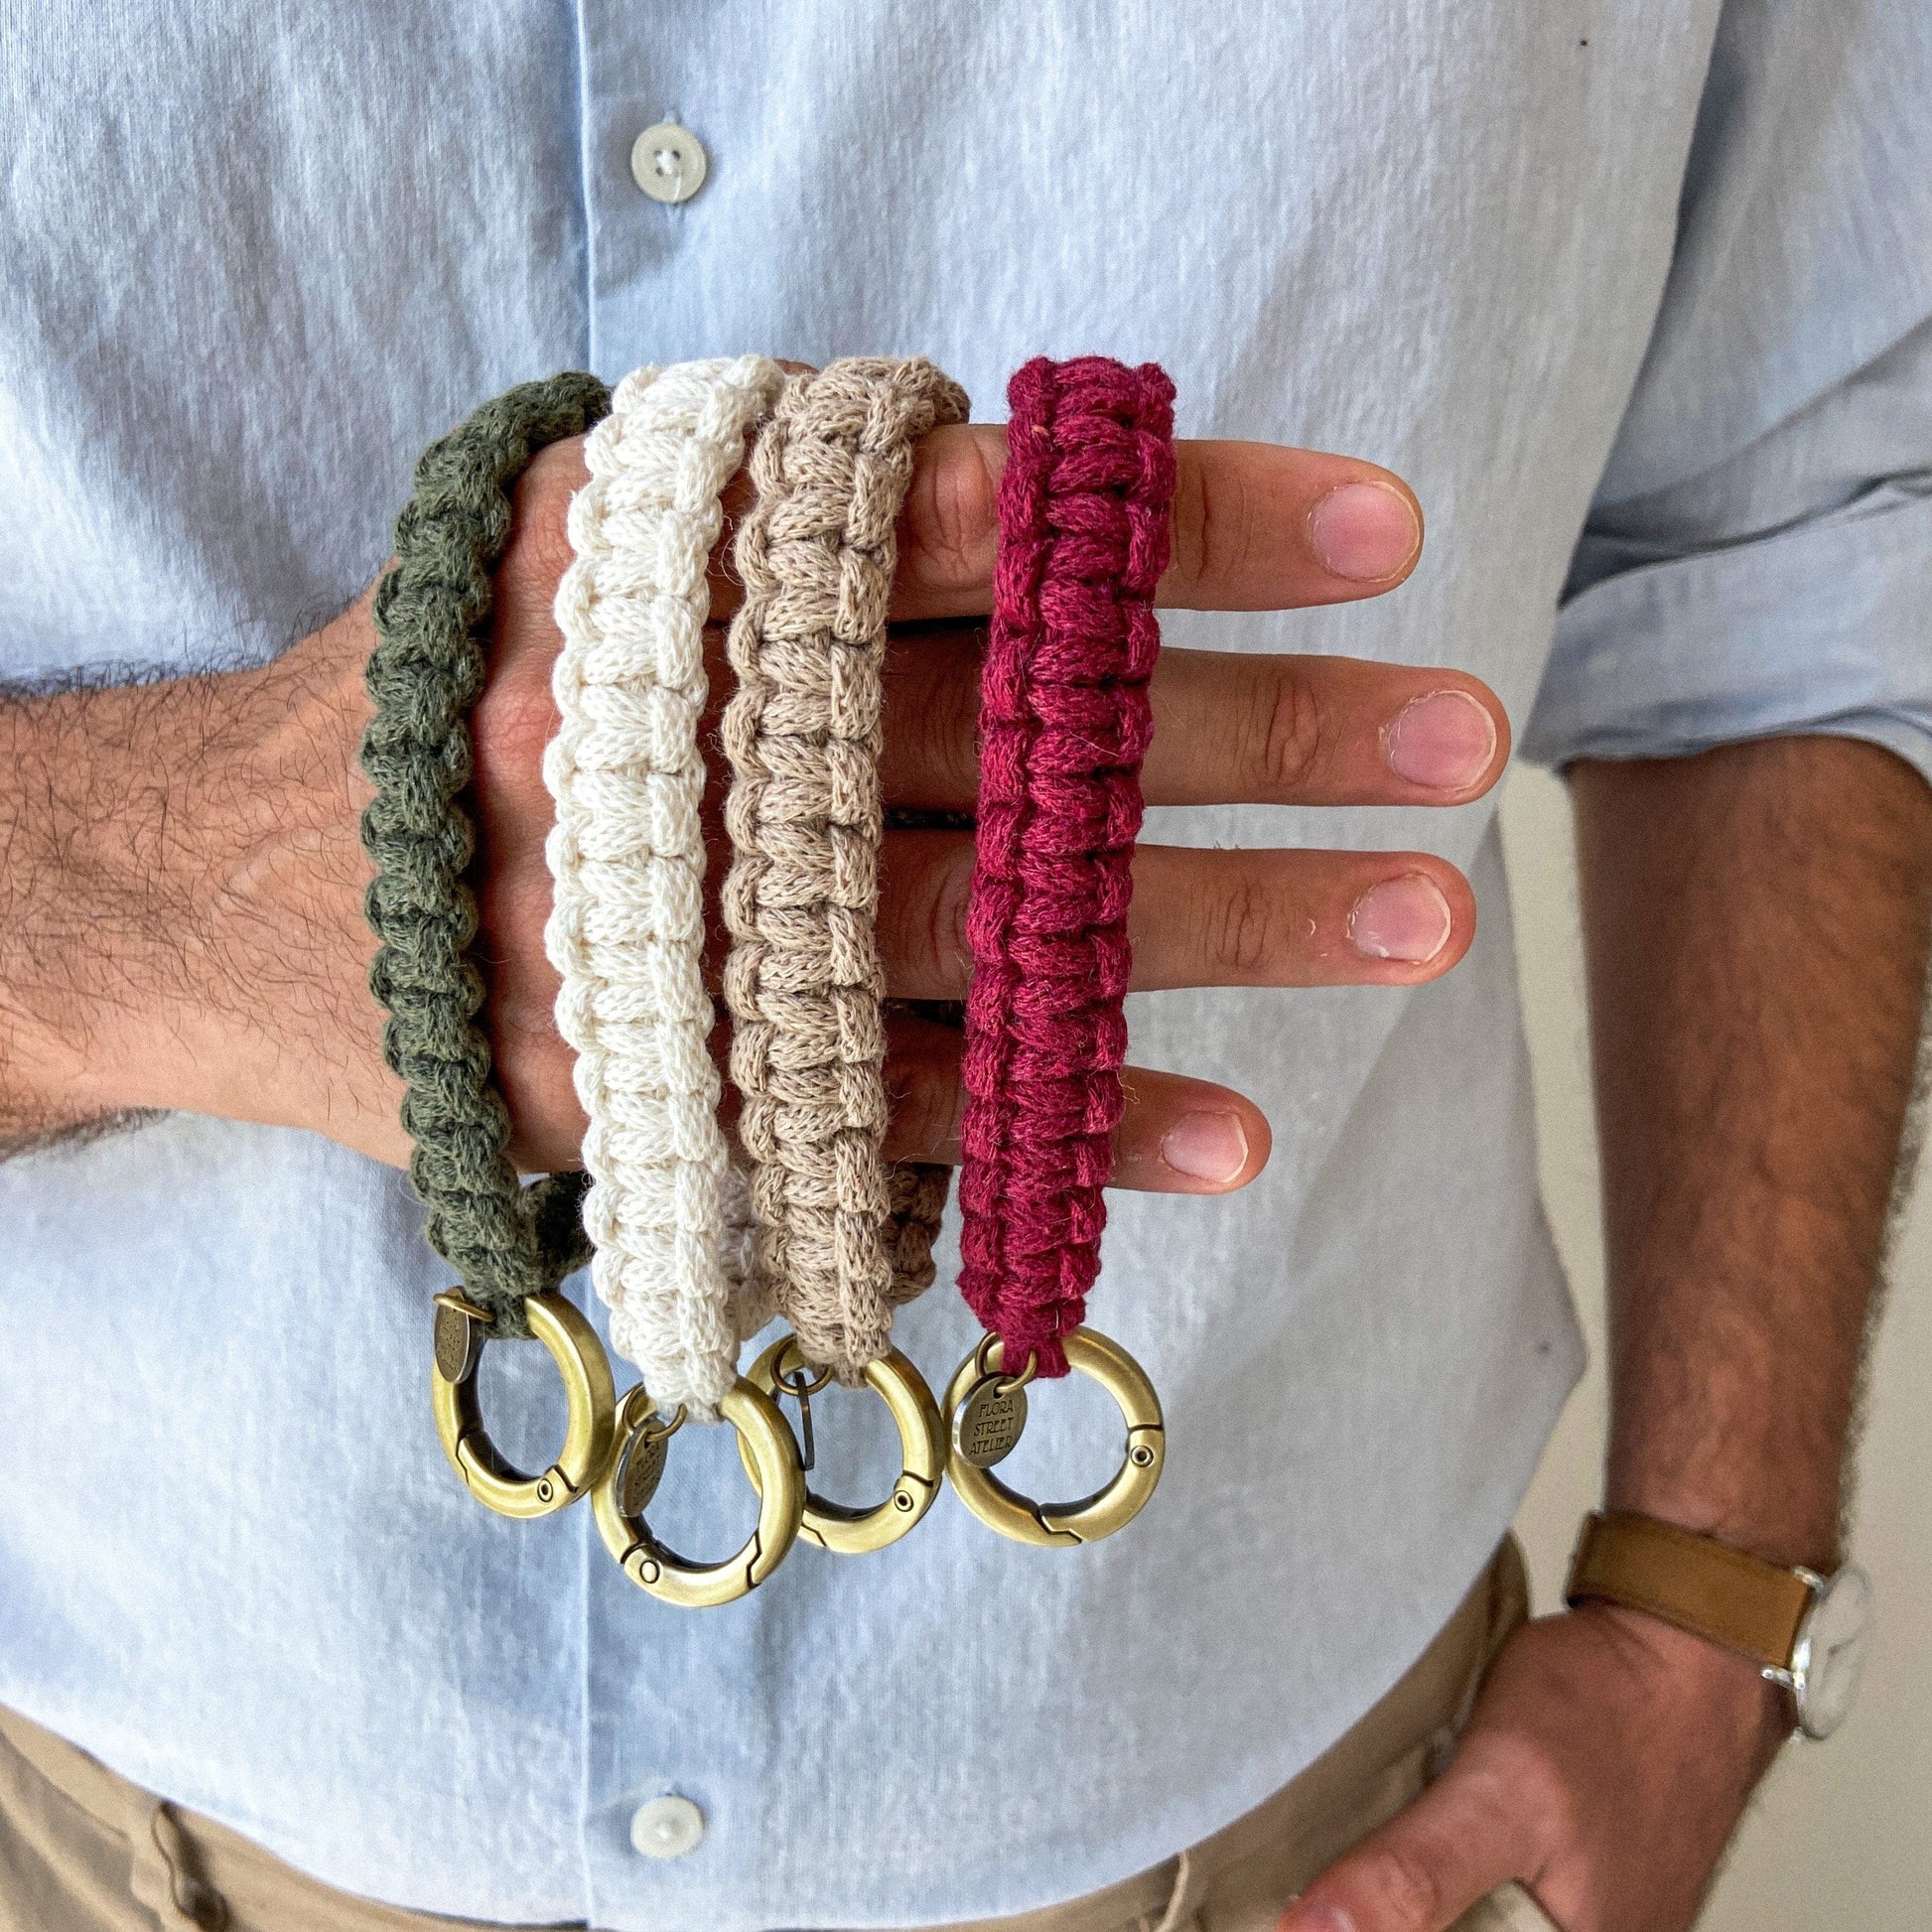 Flora Street Atelier Handmade Macrame Keychain "To go coffee" Macrame Key Ring | Wrist Strap